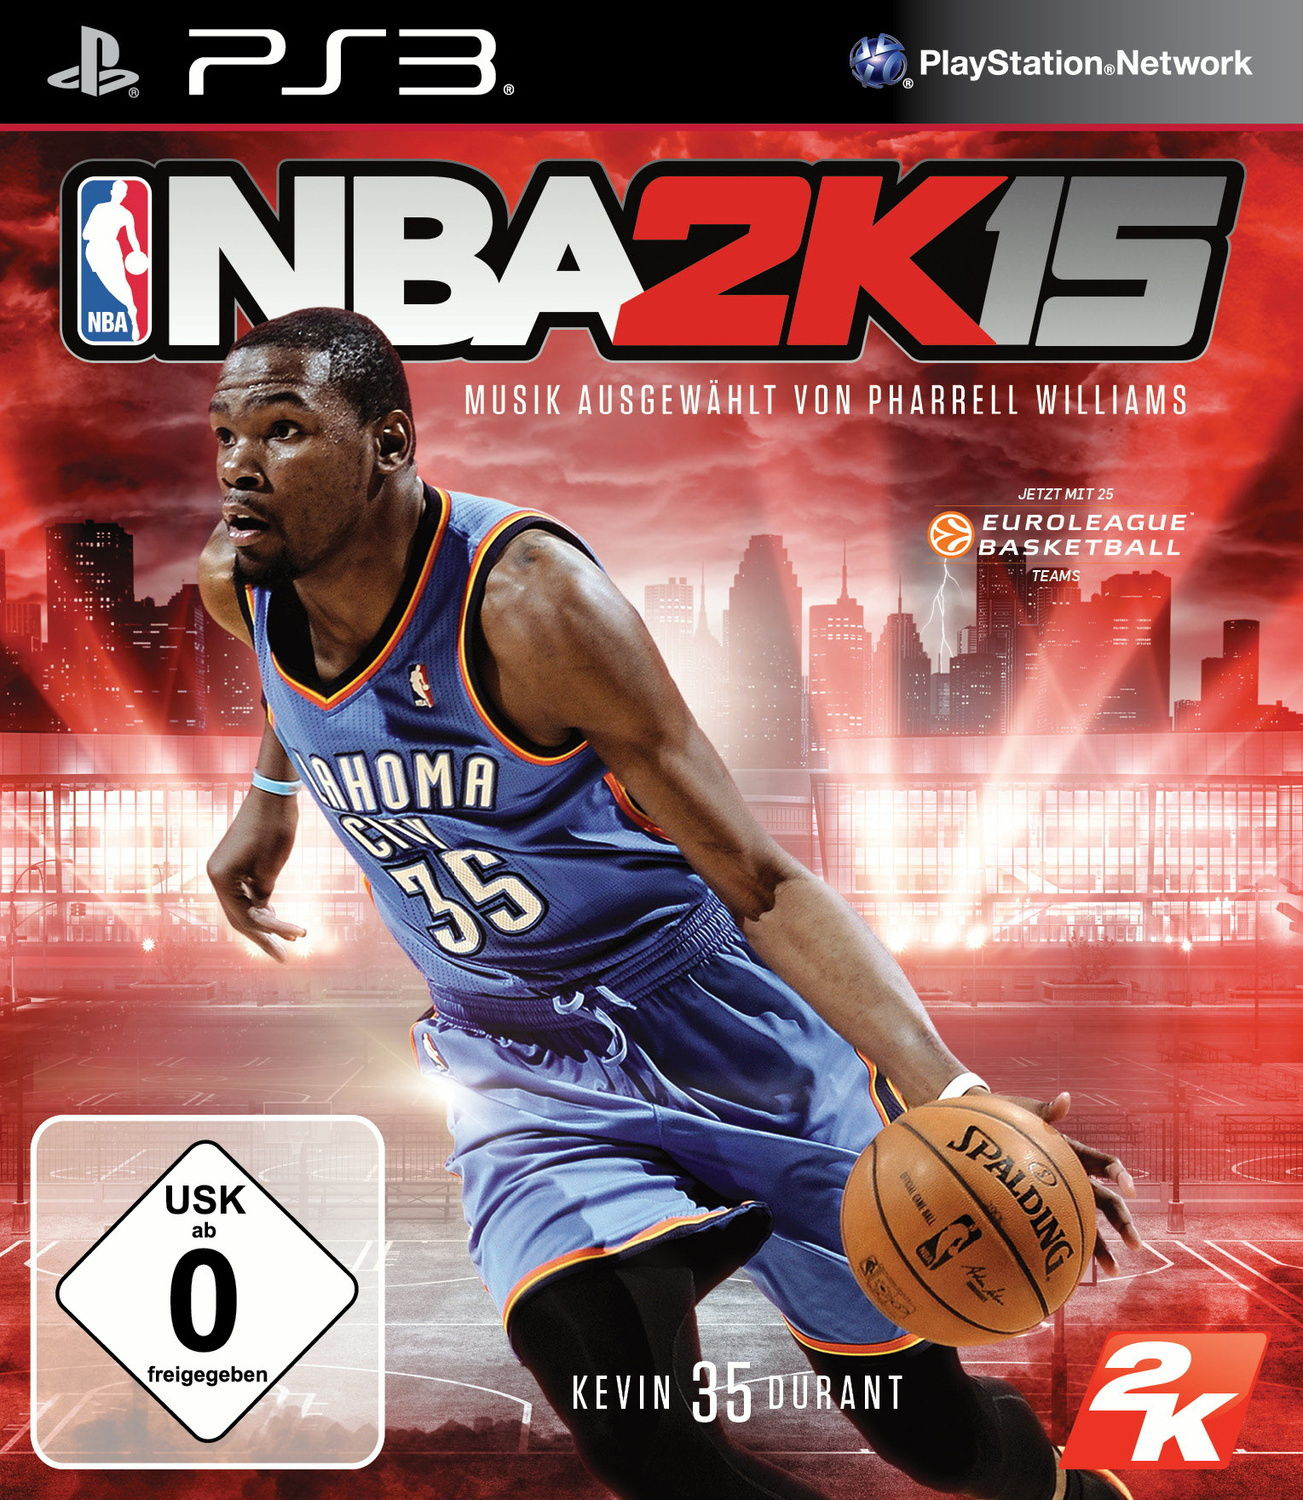 NBA 2K15 - [PlayStation 3